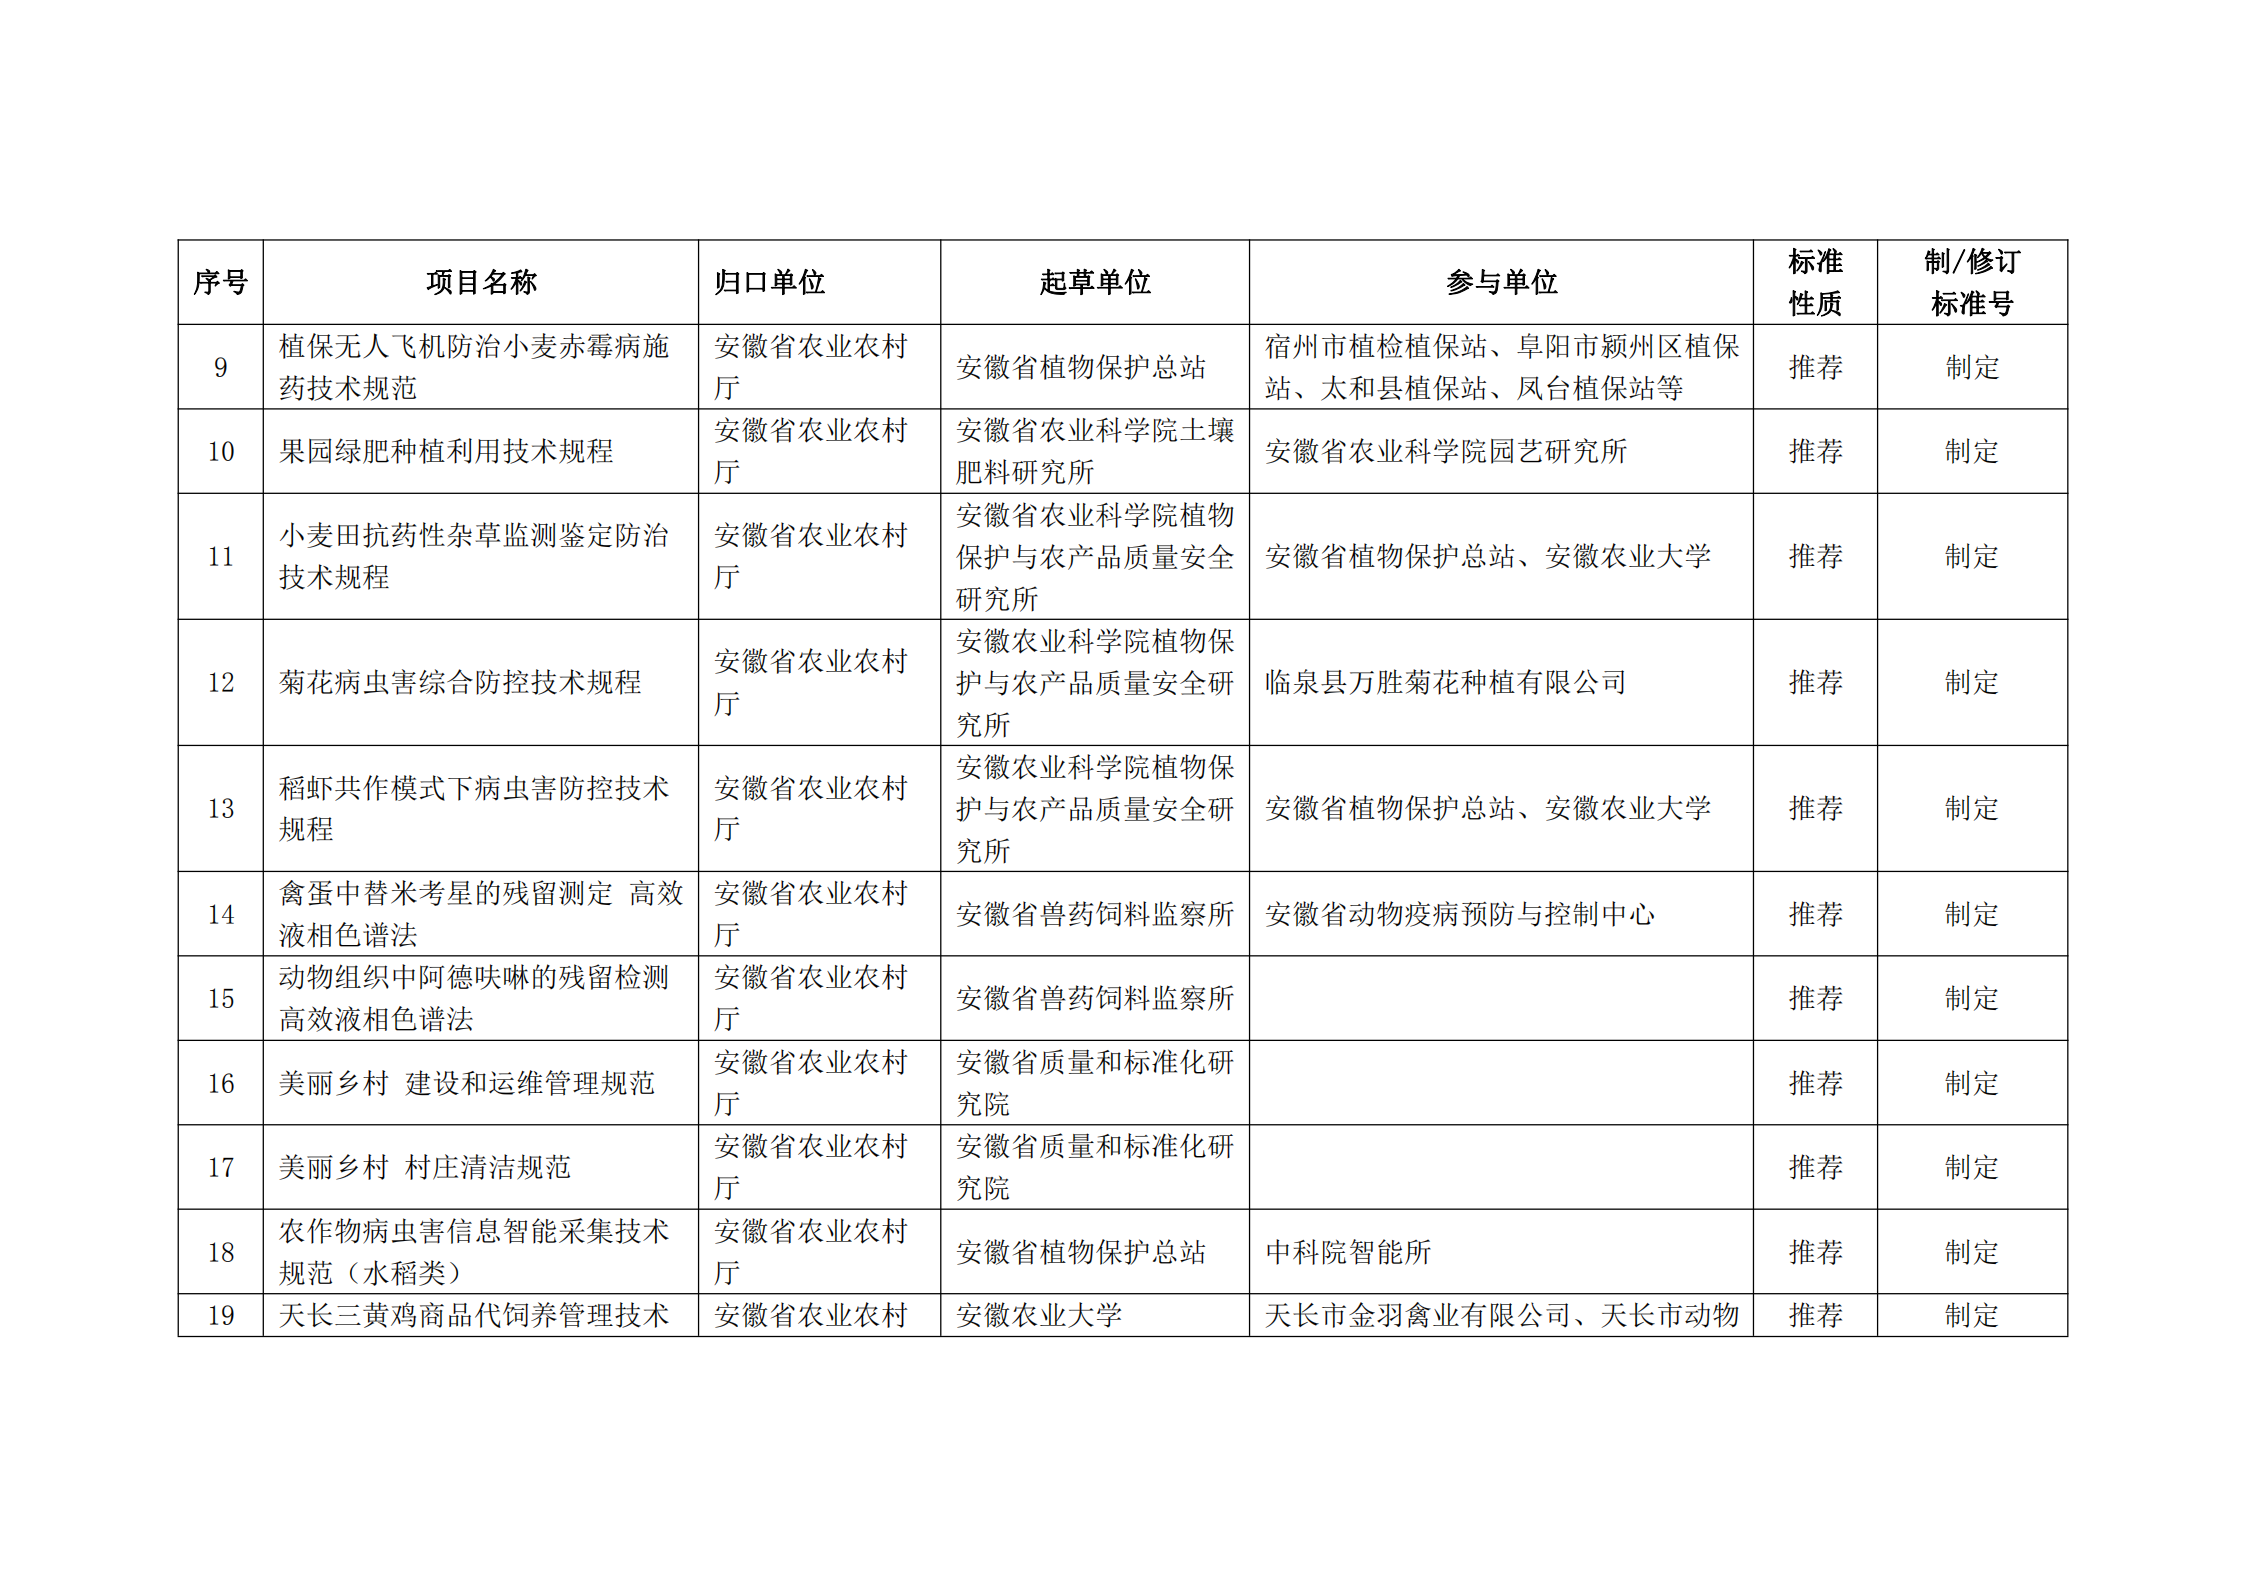 2020 年第二批安徽省地方标准制、修订计划项目汇总表(图2)